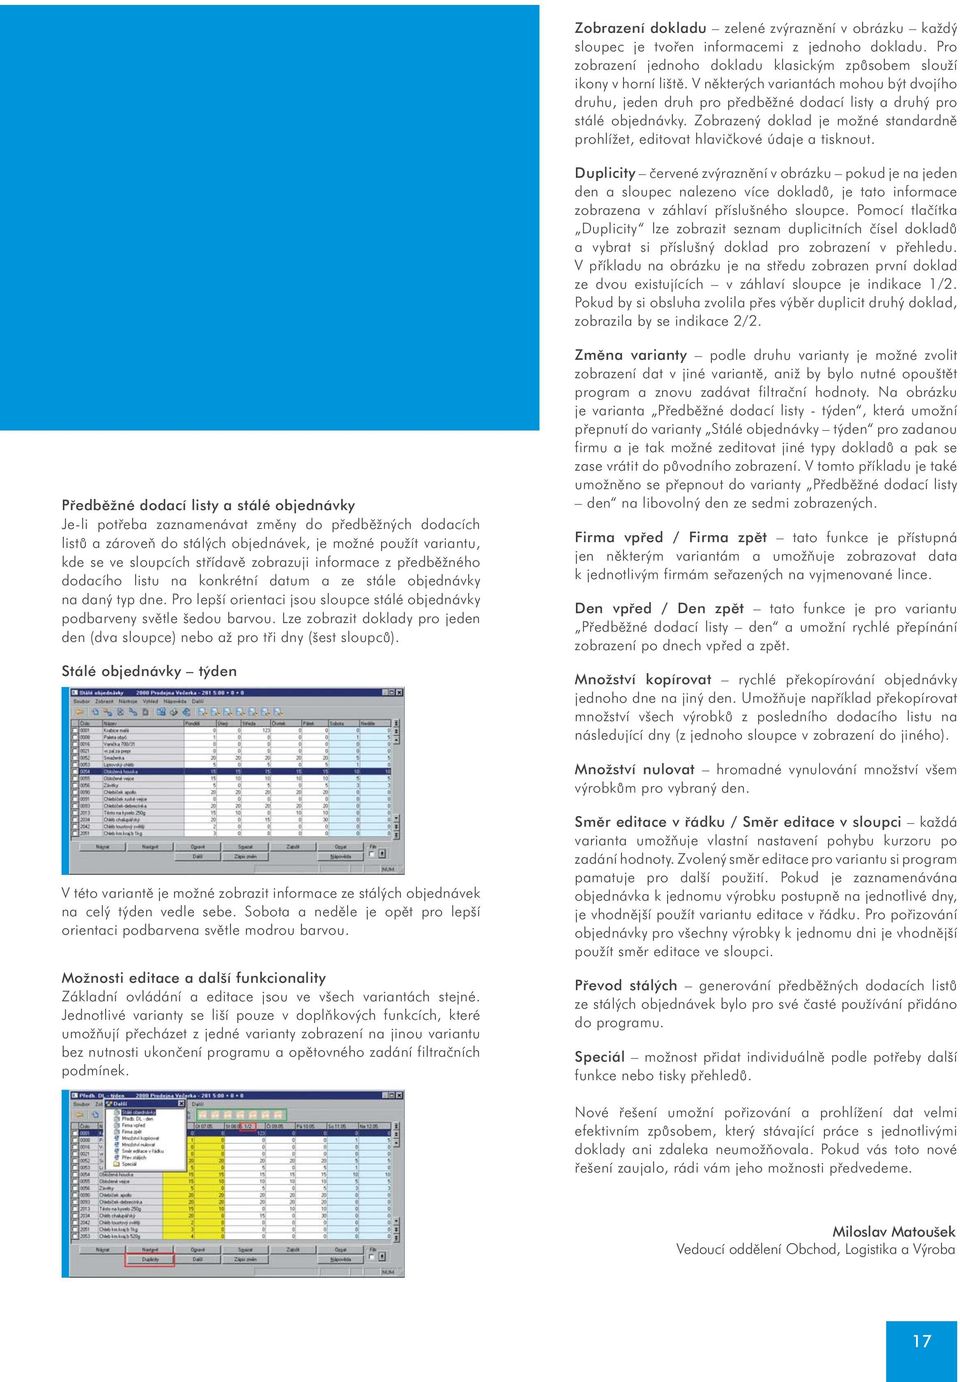 Zobrazený doklad je možné standardnì prohlížet, editovat hlavièkové údaje a tisknout.